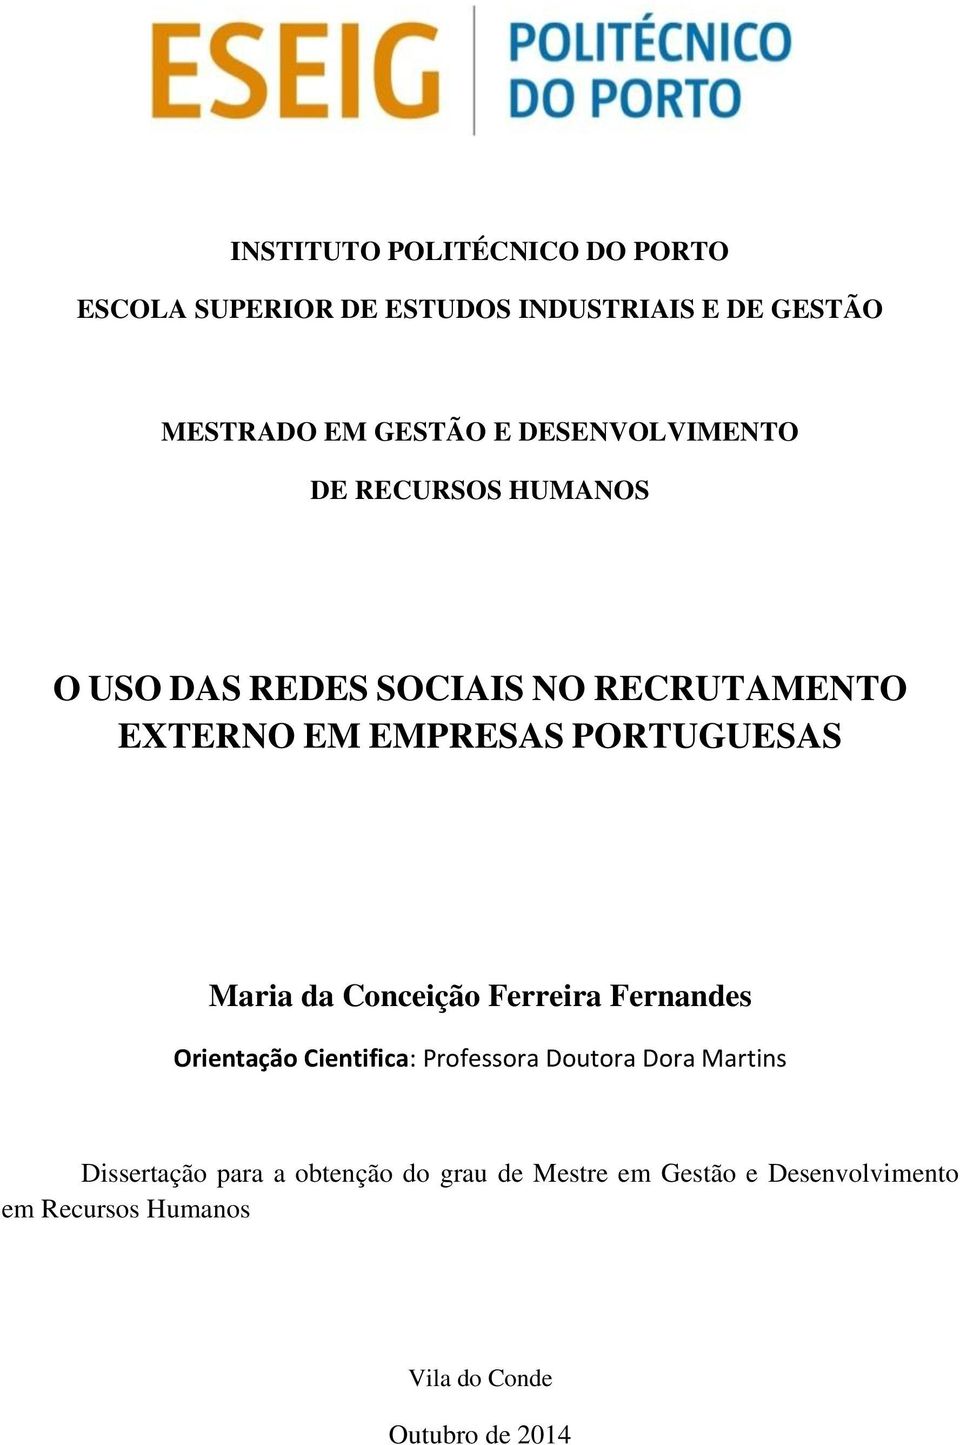 PORTUGUESAS Maria da Conceição Ferreira Fernandes Orientação Cientifica: Professora Doutora Dora Martins